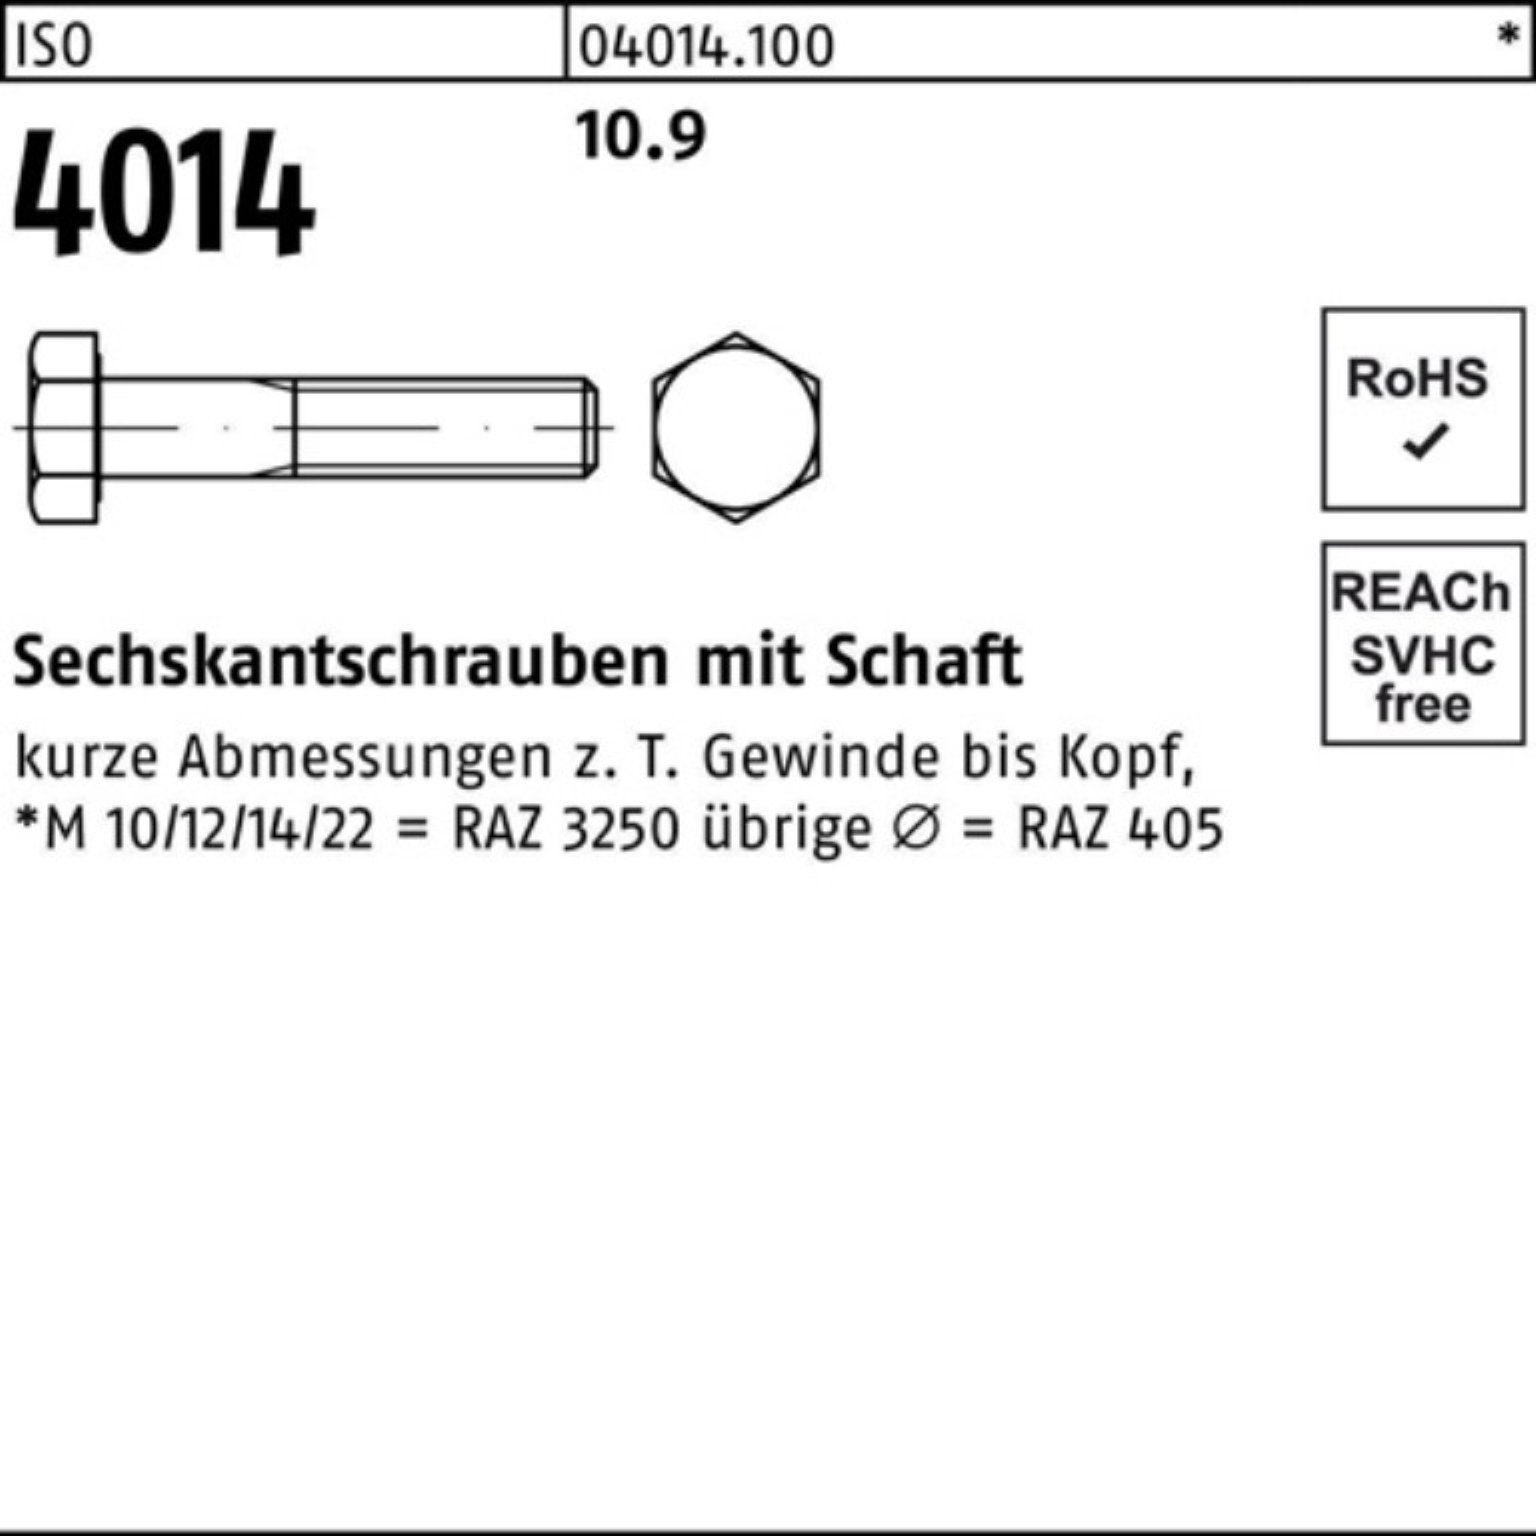 1 Sechskantschraube 4014 Bufab M30x 100er Stück Schaft 350 Sechskantschraube ISO 10.9 IS Pack